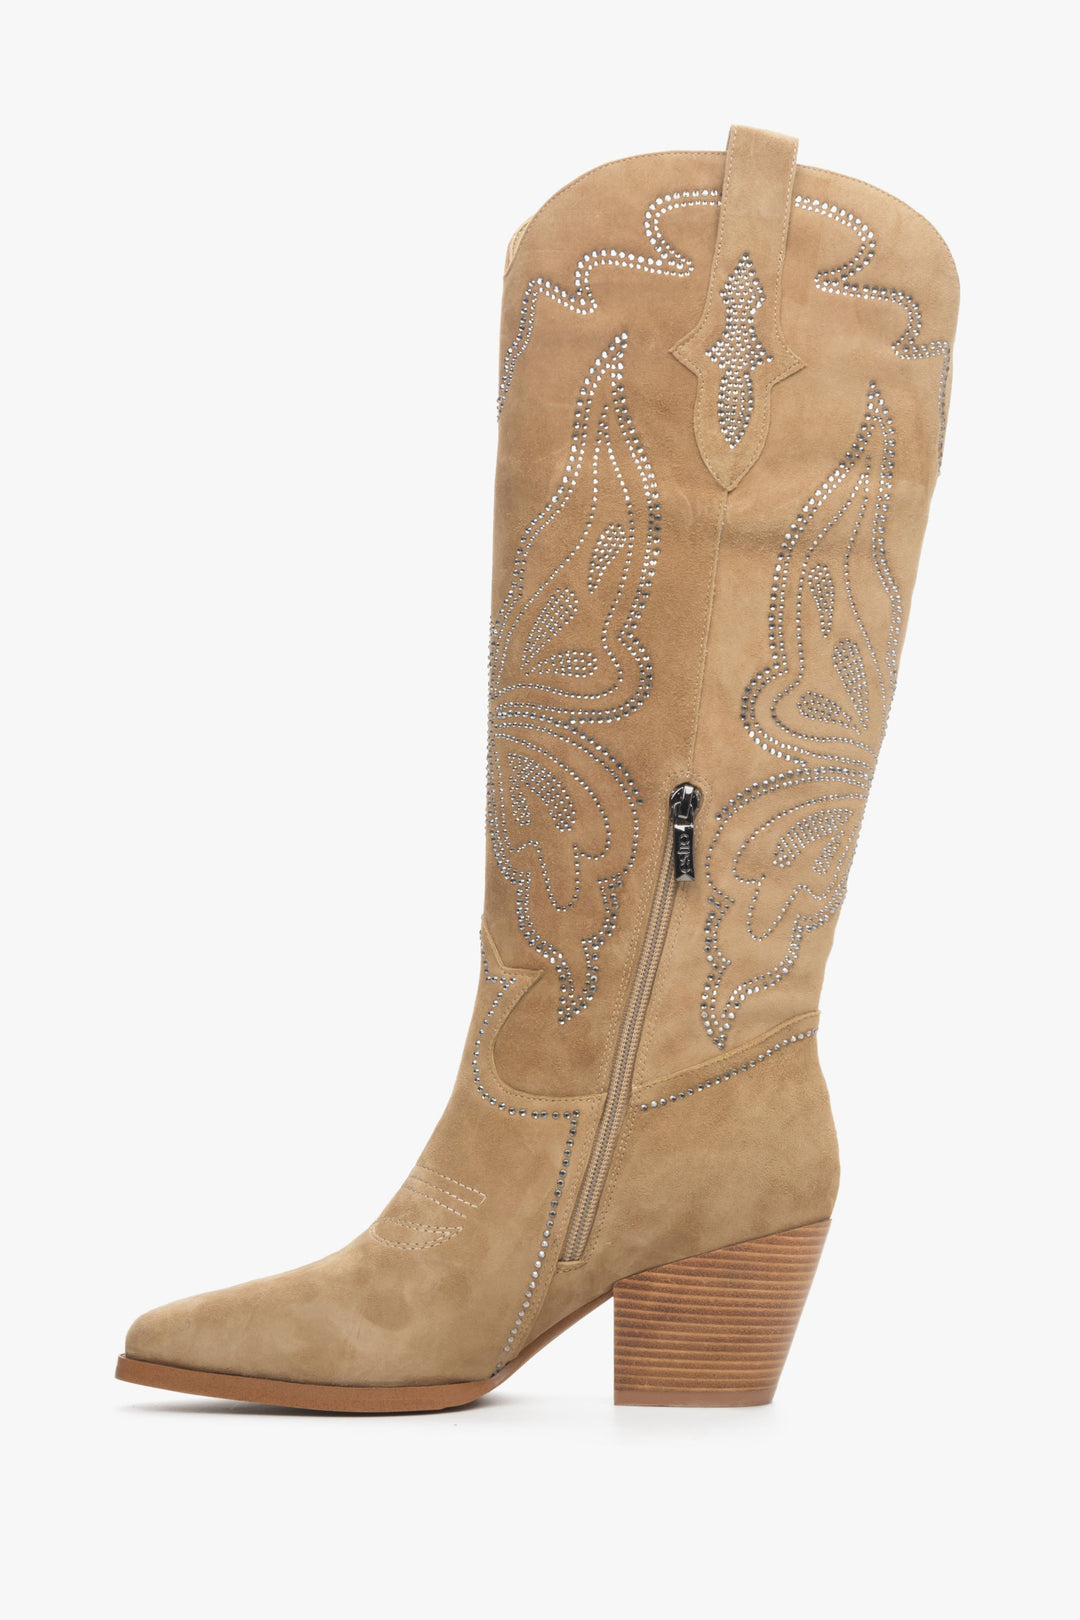 Velour light beige women's cowboy boots by Estro - shoe profile.